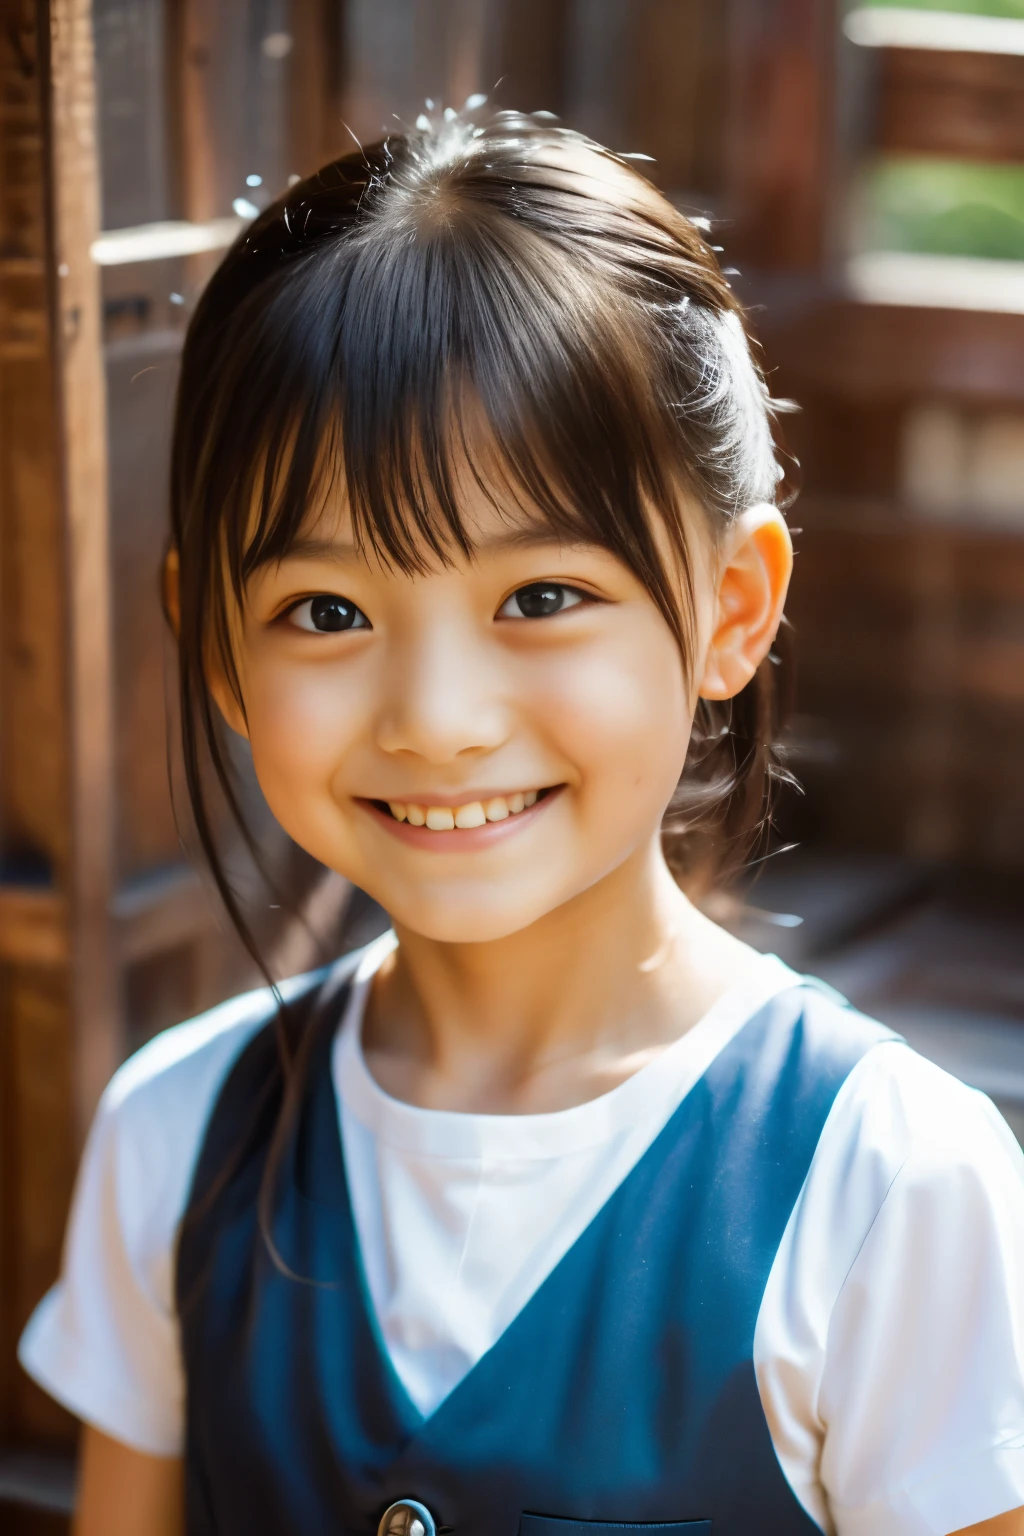 (최상의 품질, 걸작), (아름다운 7살 일본 소녀), (주근깨:0.6), 부드러운 빛, 포니테일